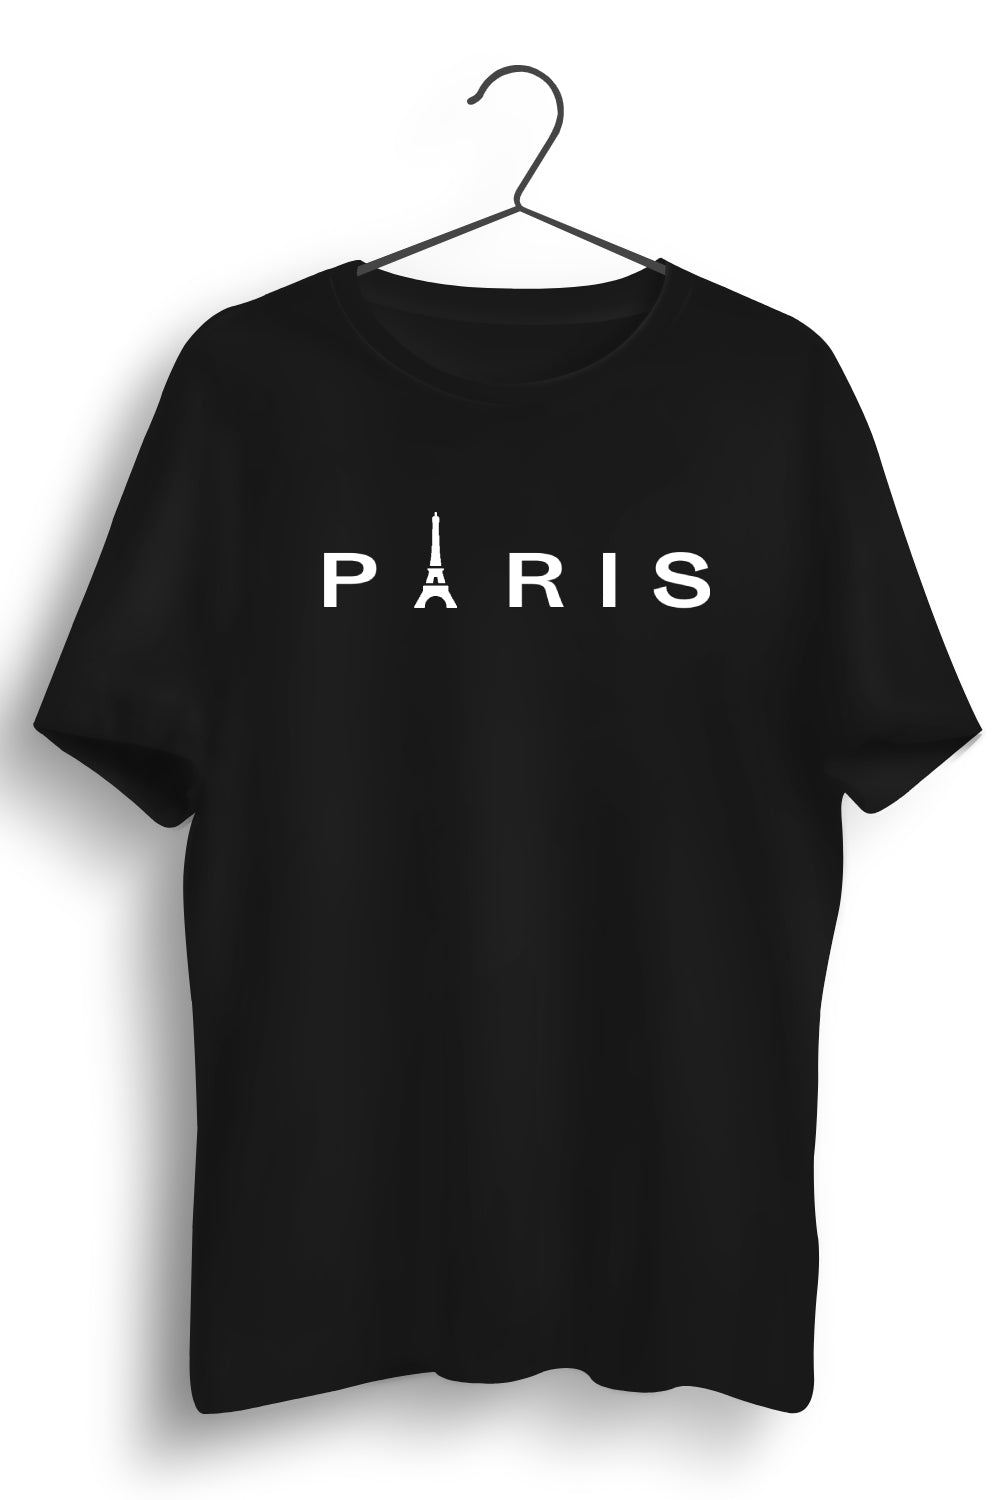 Paris Graphic Printed Black Tshirt